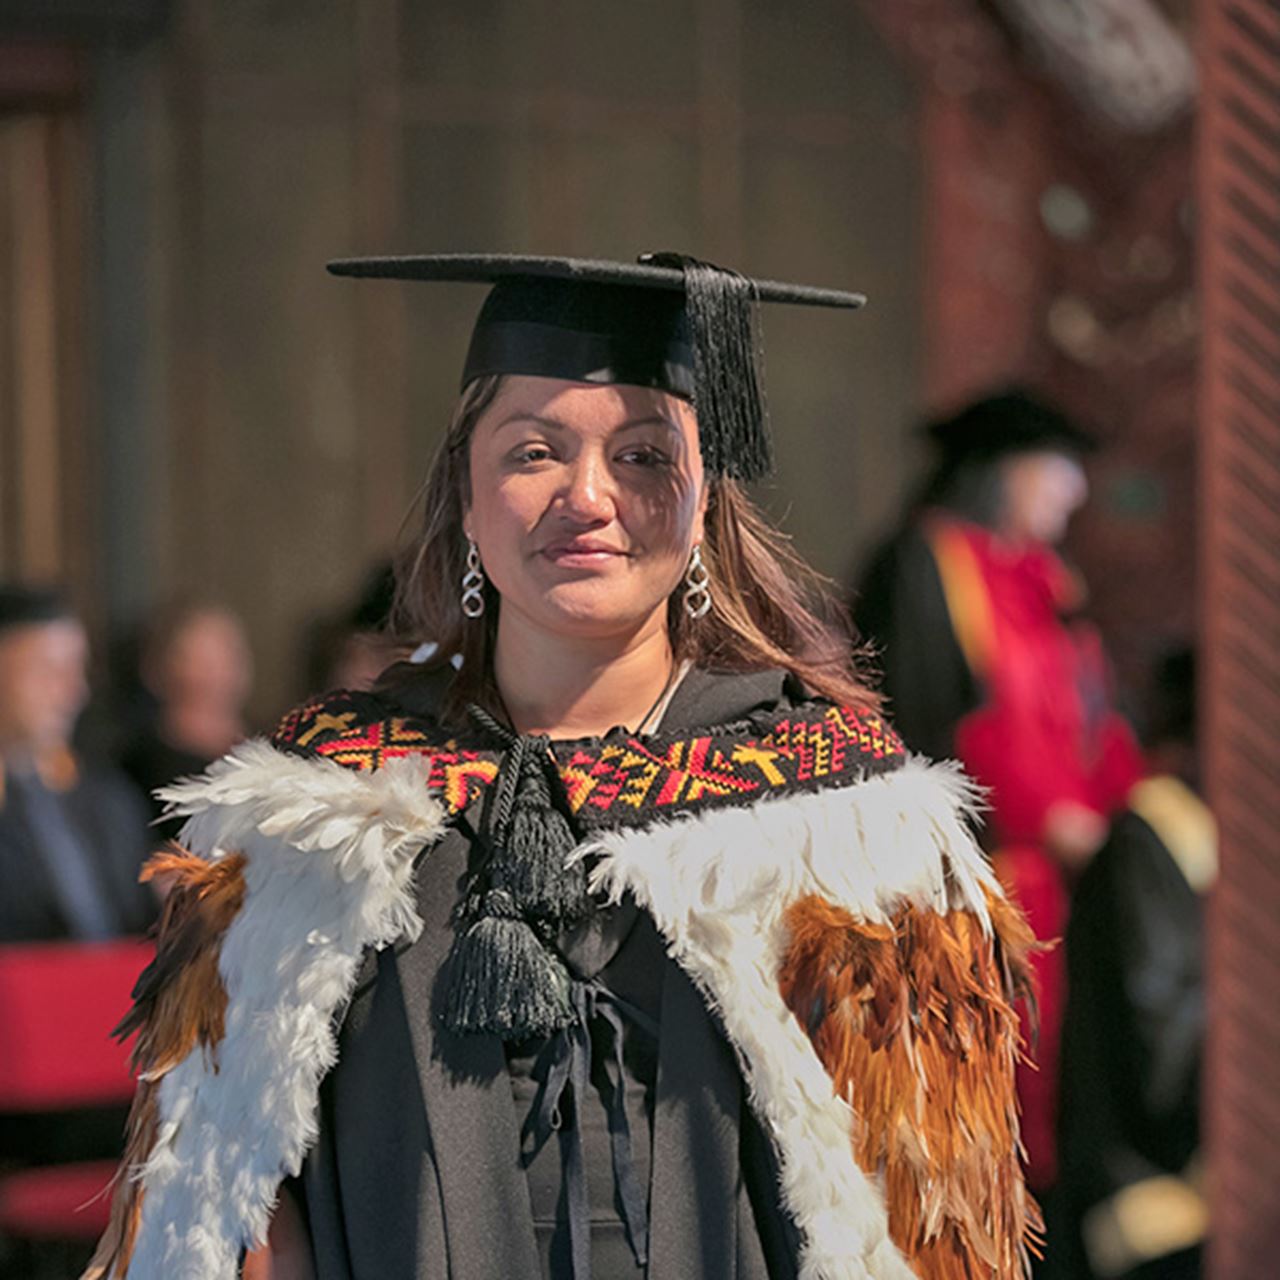 Bachelor of Humanities graduate, Christina Nuku on her graduation day